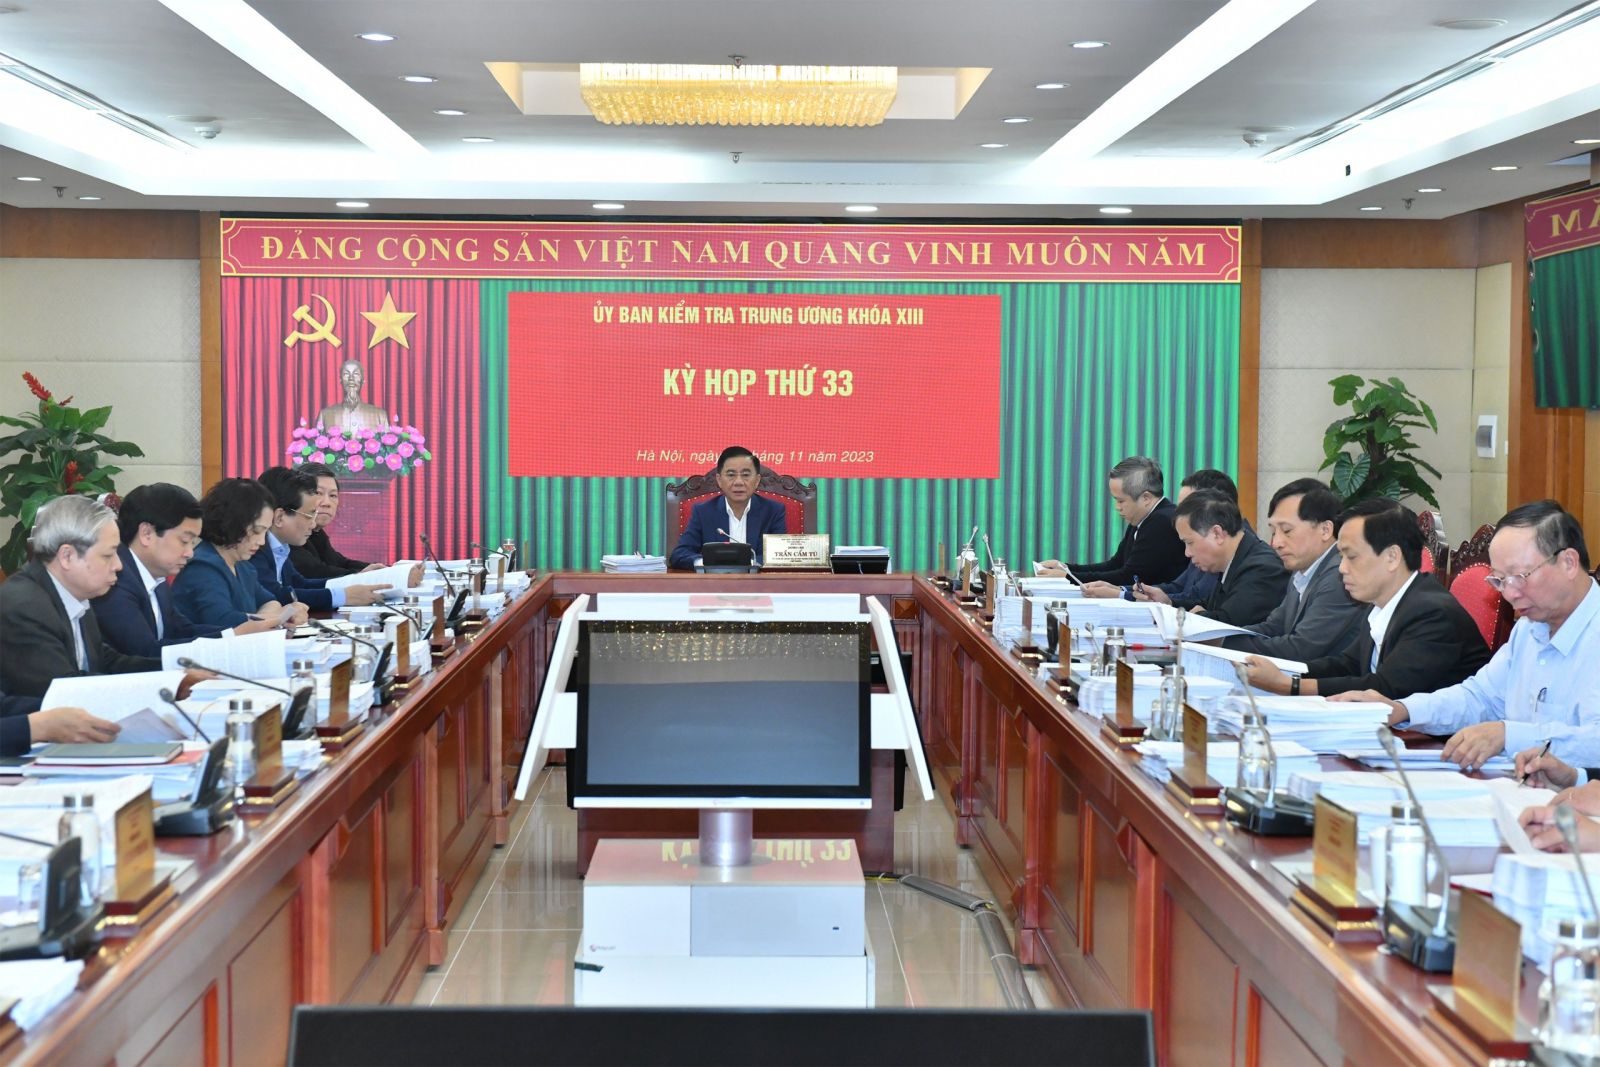 Bí thư và Chủ tịch tỉnh UBND tỉnh Quảng Nam bị đề nghị kỷ luật - Ảnh 1.